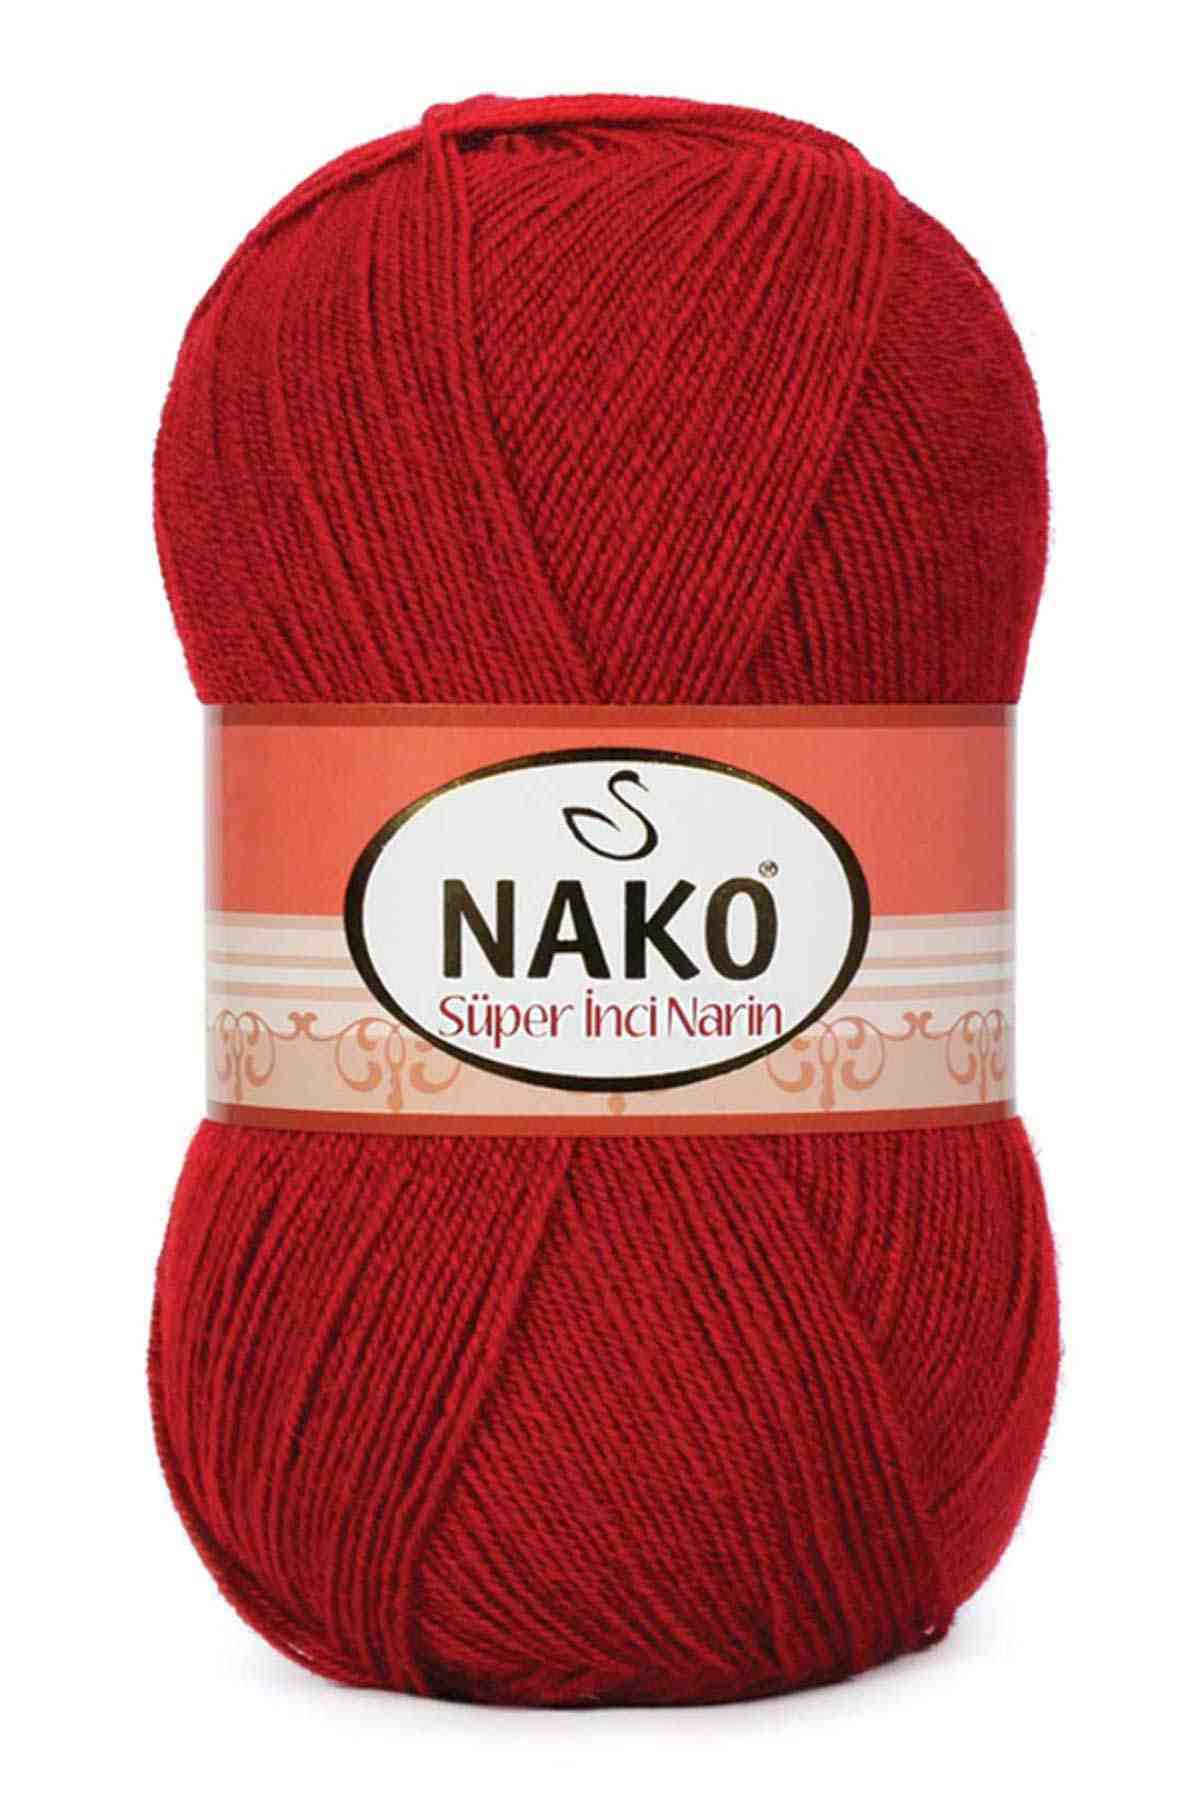 Nako Süper İnci Narin Wool Yarn